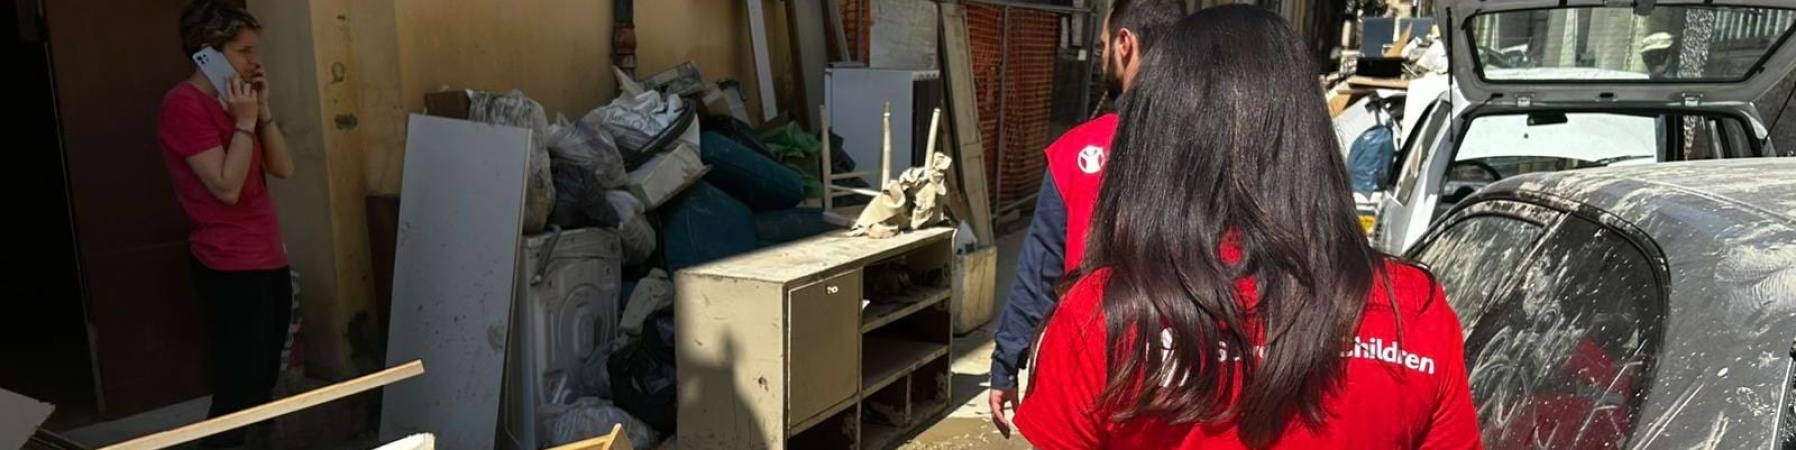 Operatore Save the Children durante un sopralluogo in Emilia-Romagna post alluvione